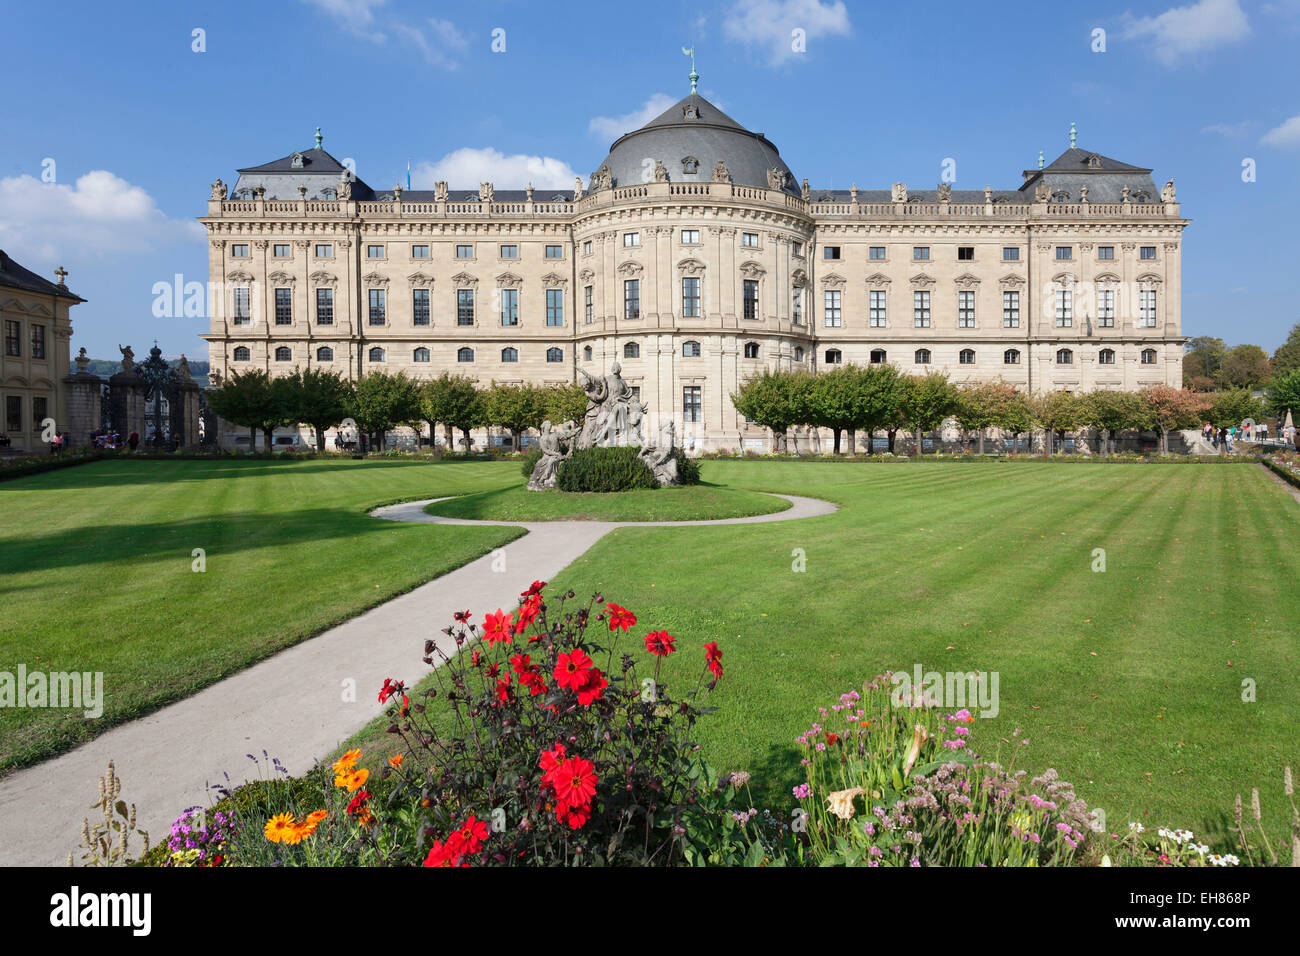 Residenz, Barock Palast, erbaut von Balthasar Neumann, Hofgarten Park, UNESCO, Würzburg, Franken, Bayern, Deutschland Stockfoto